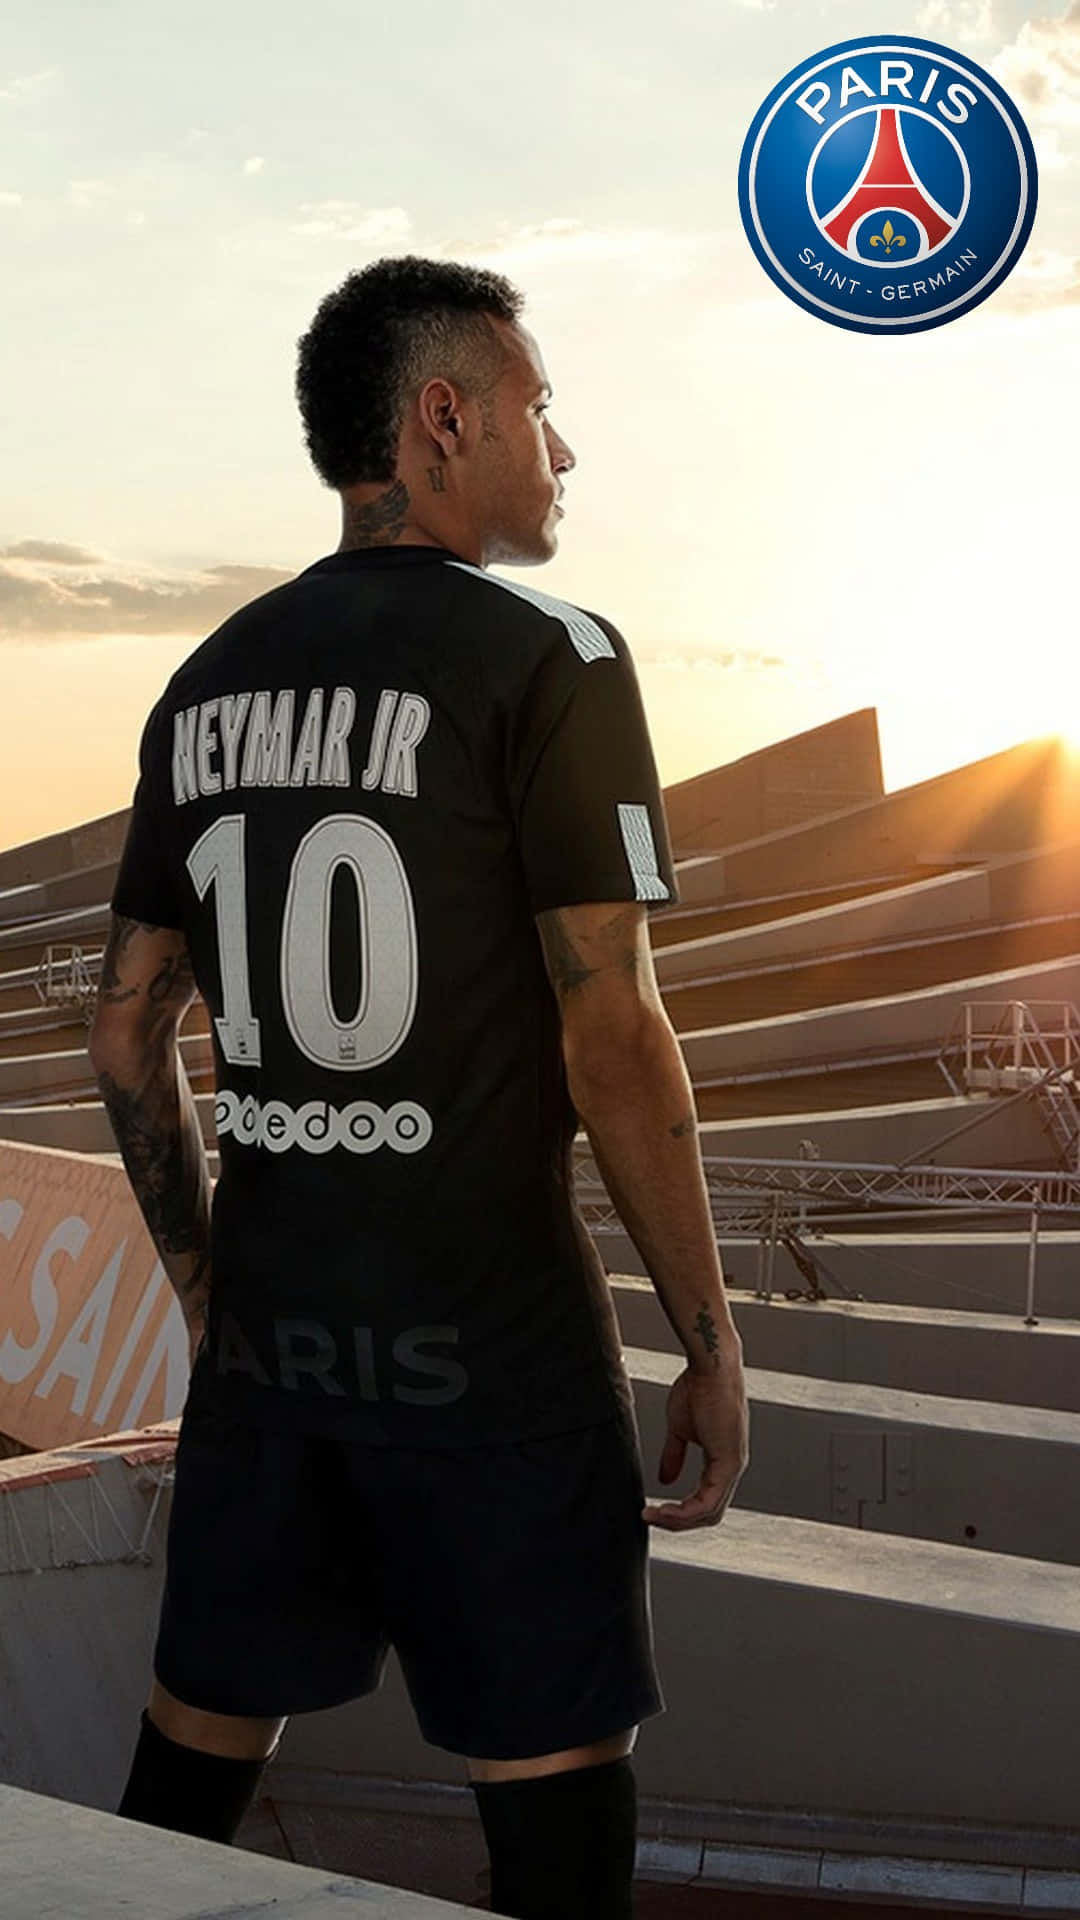 Neymarpräsentiert Stolz Sein Schickes Neues Iphone. Wallpaper